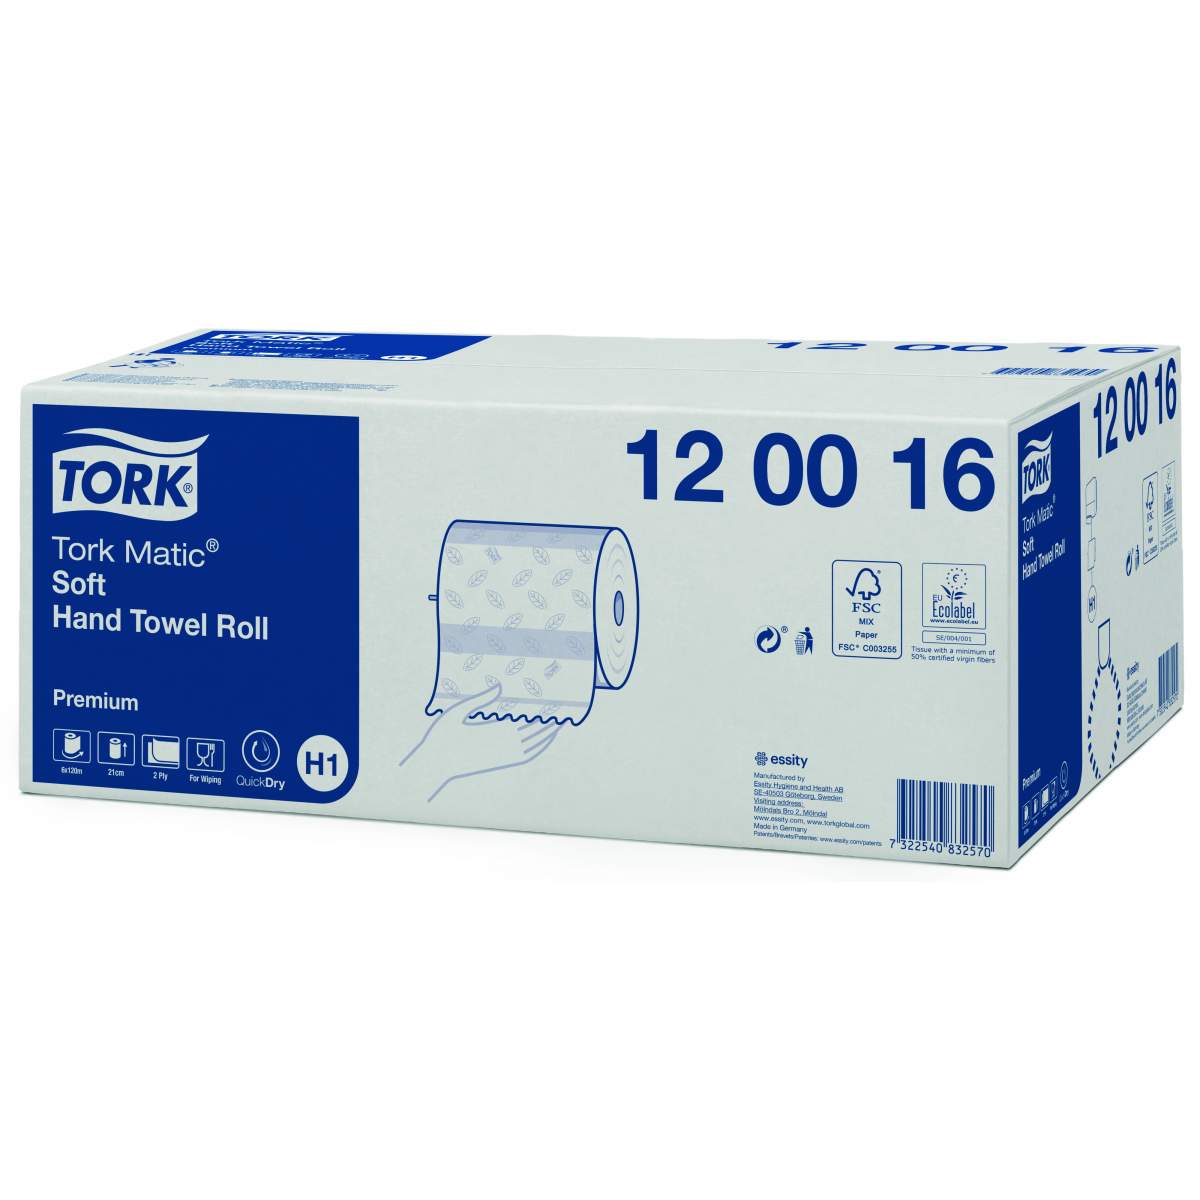 Полотенца tork matic. Полотенца бумажные Tork matic Premium 290016. Полотенце Tork Premium Soft. Полотенце торк рулон /6. Полотенца бумажные рулонные Tork (система h13).